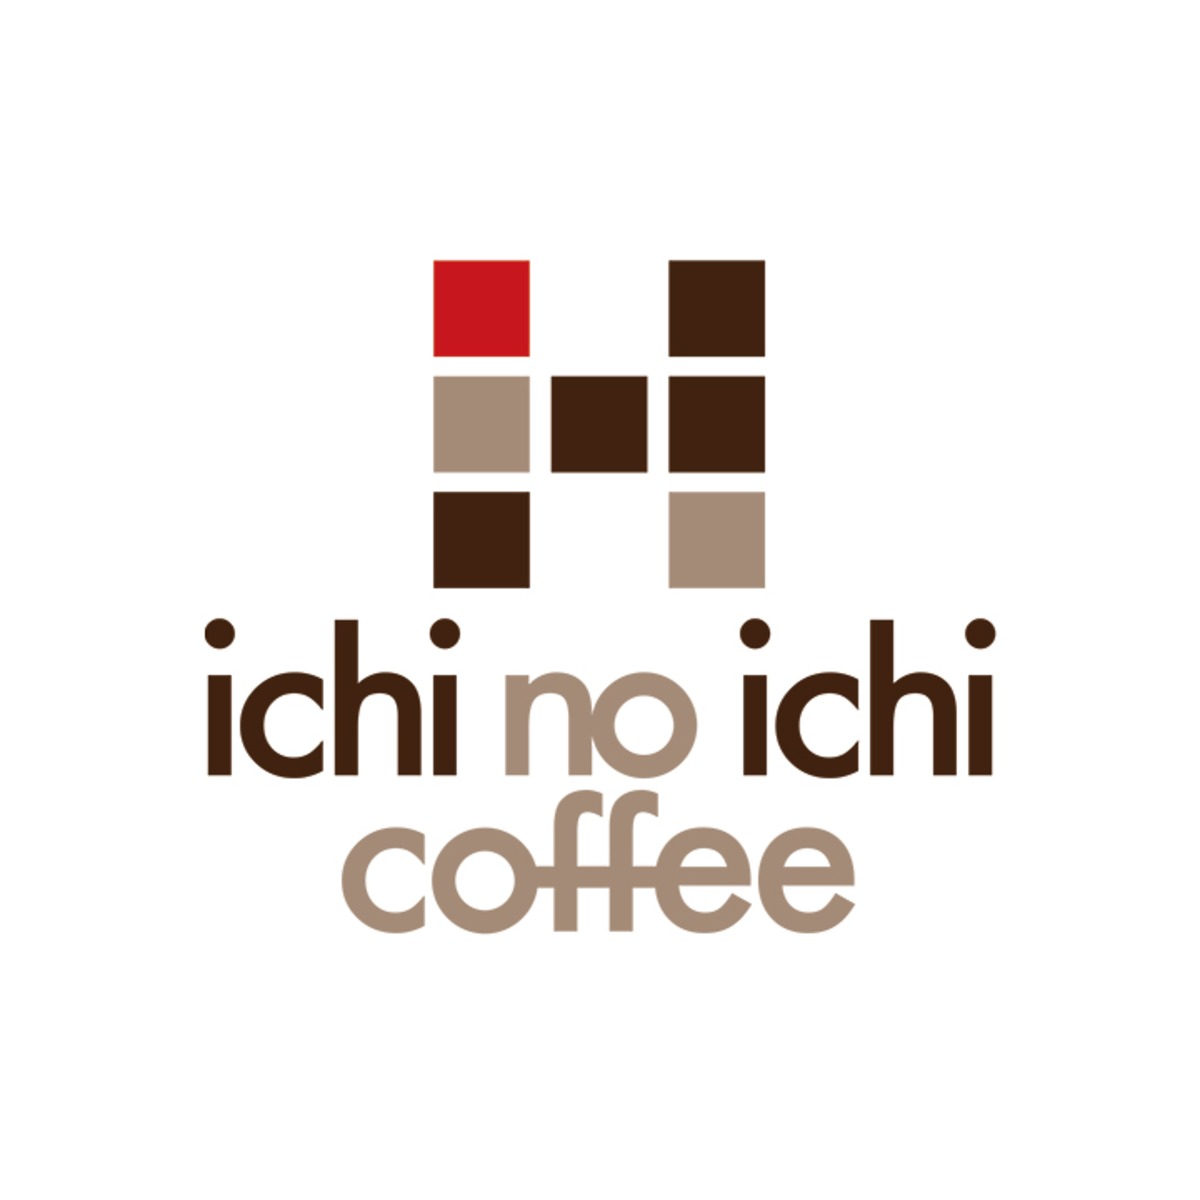 ichinoichi coffee